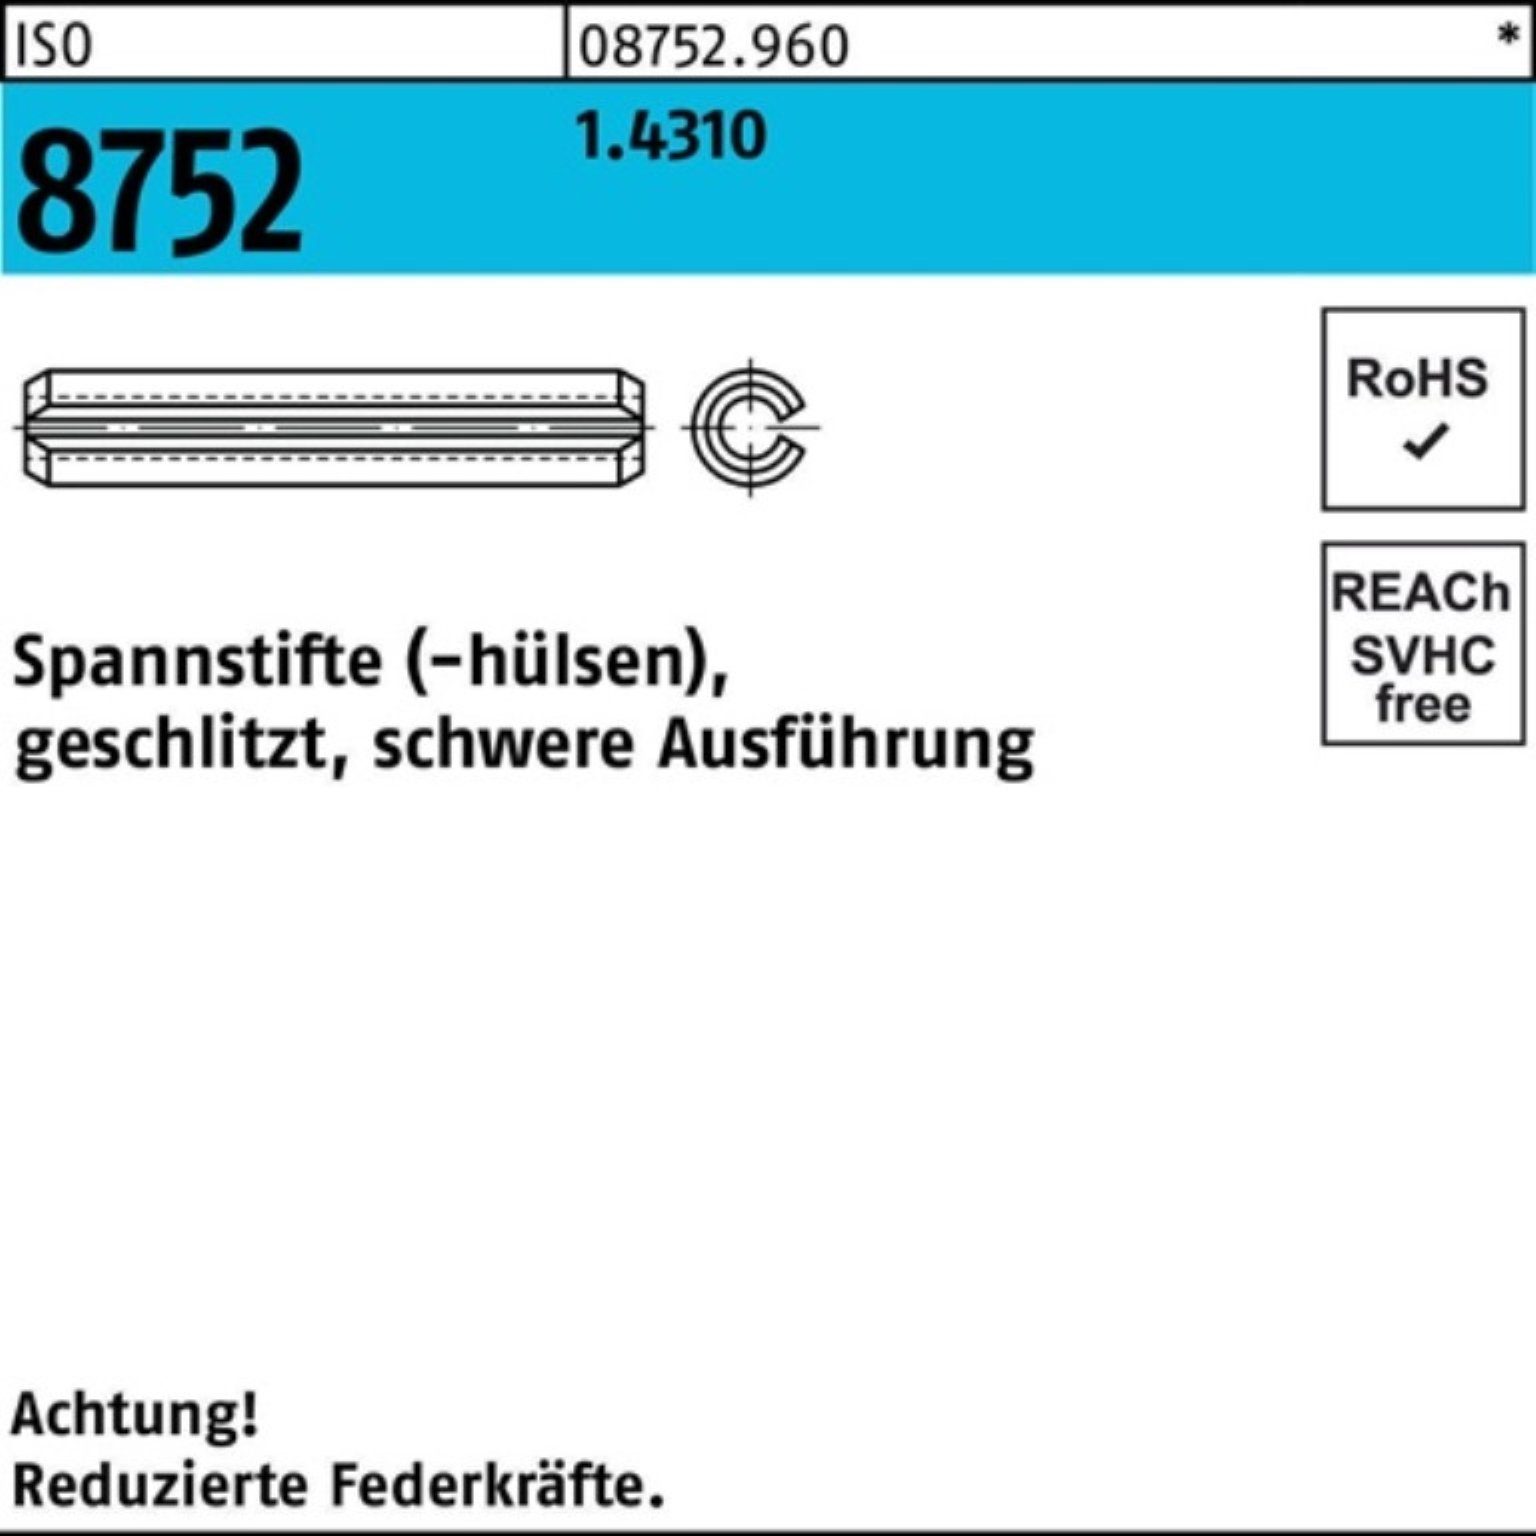 Pack ISO Spannstift 100er 8752 3,5x 1.4310 32 Spannstift Ausf. geschlitzt Reyher schwere